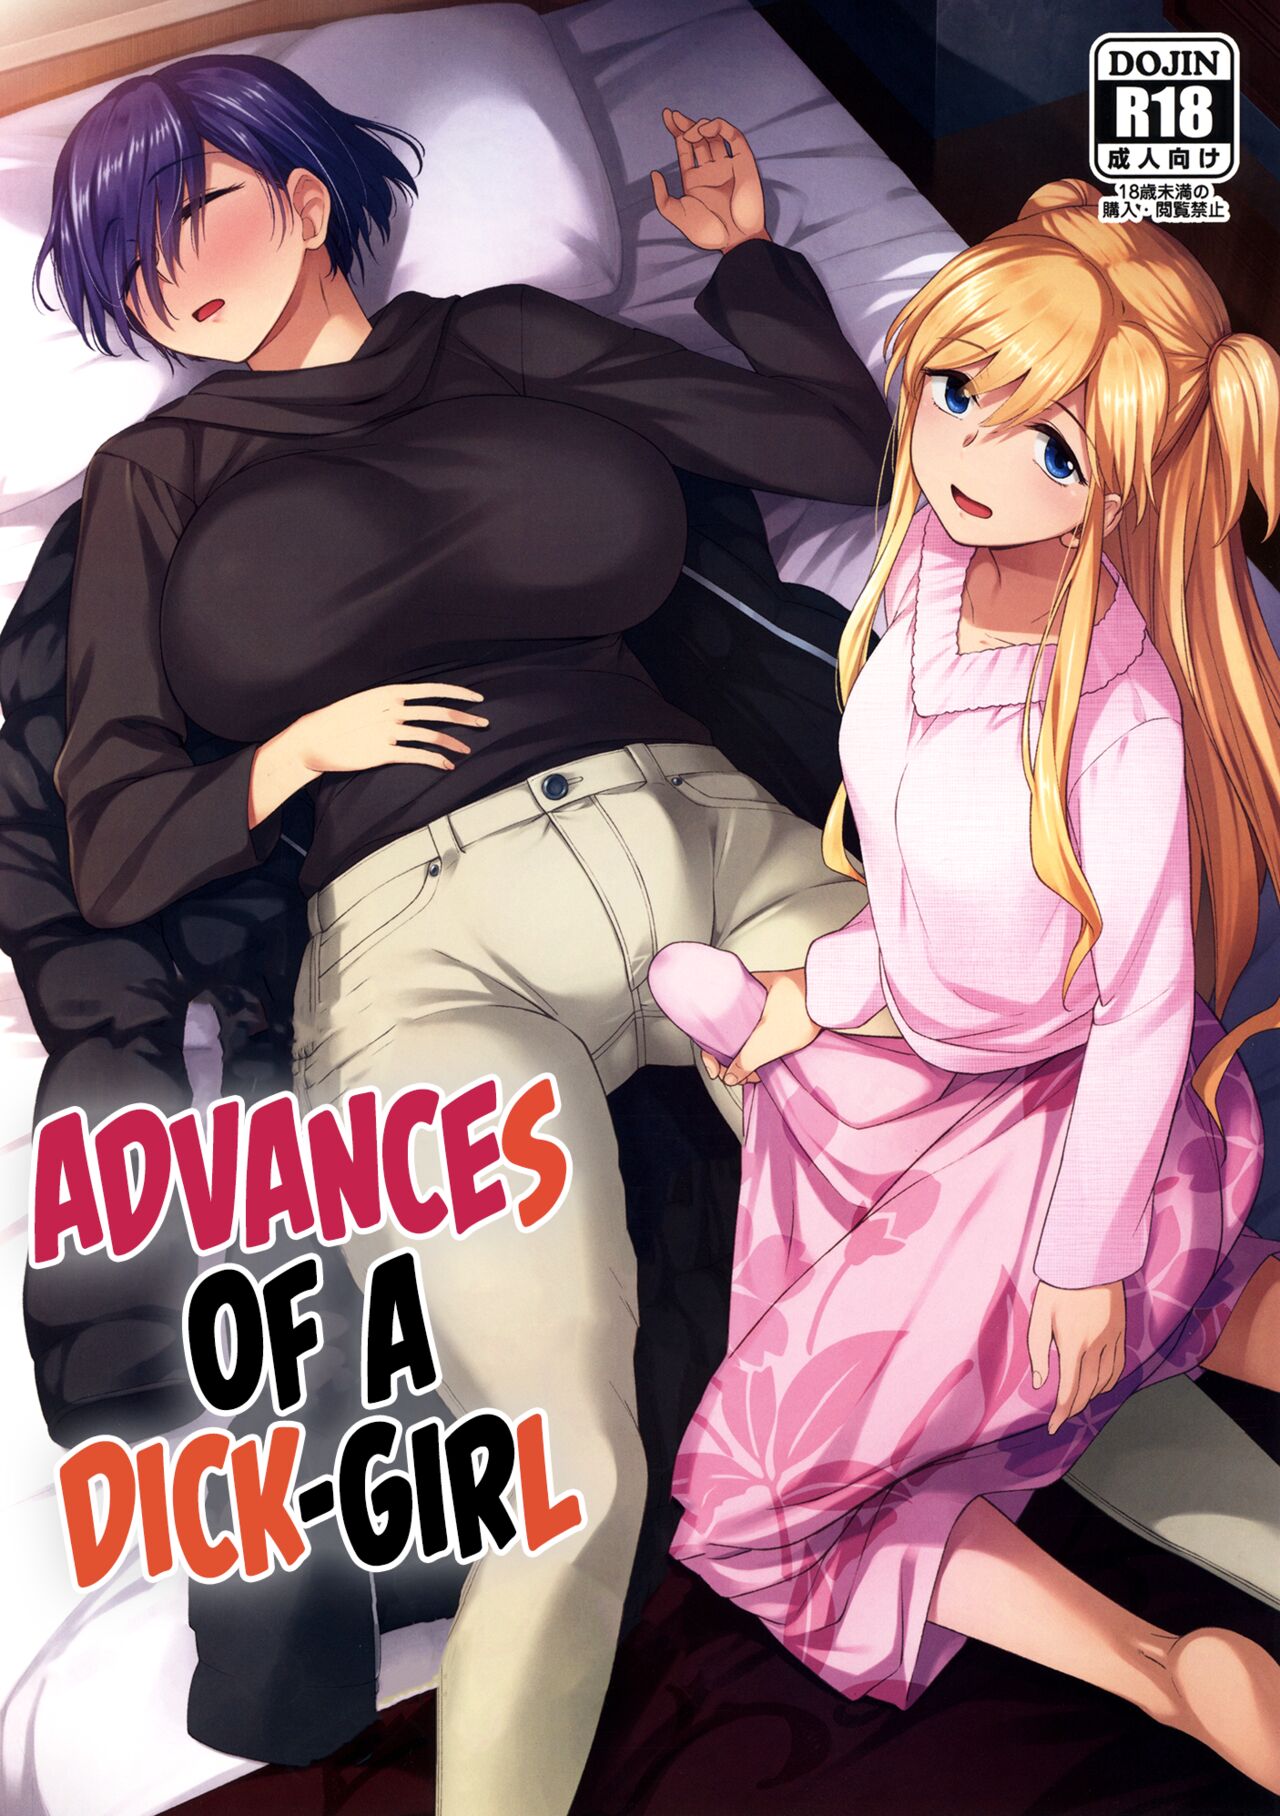 Anime chicks with dicks